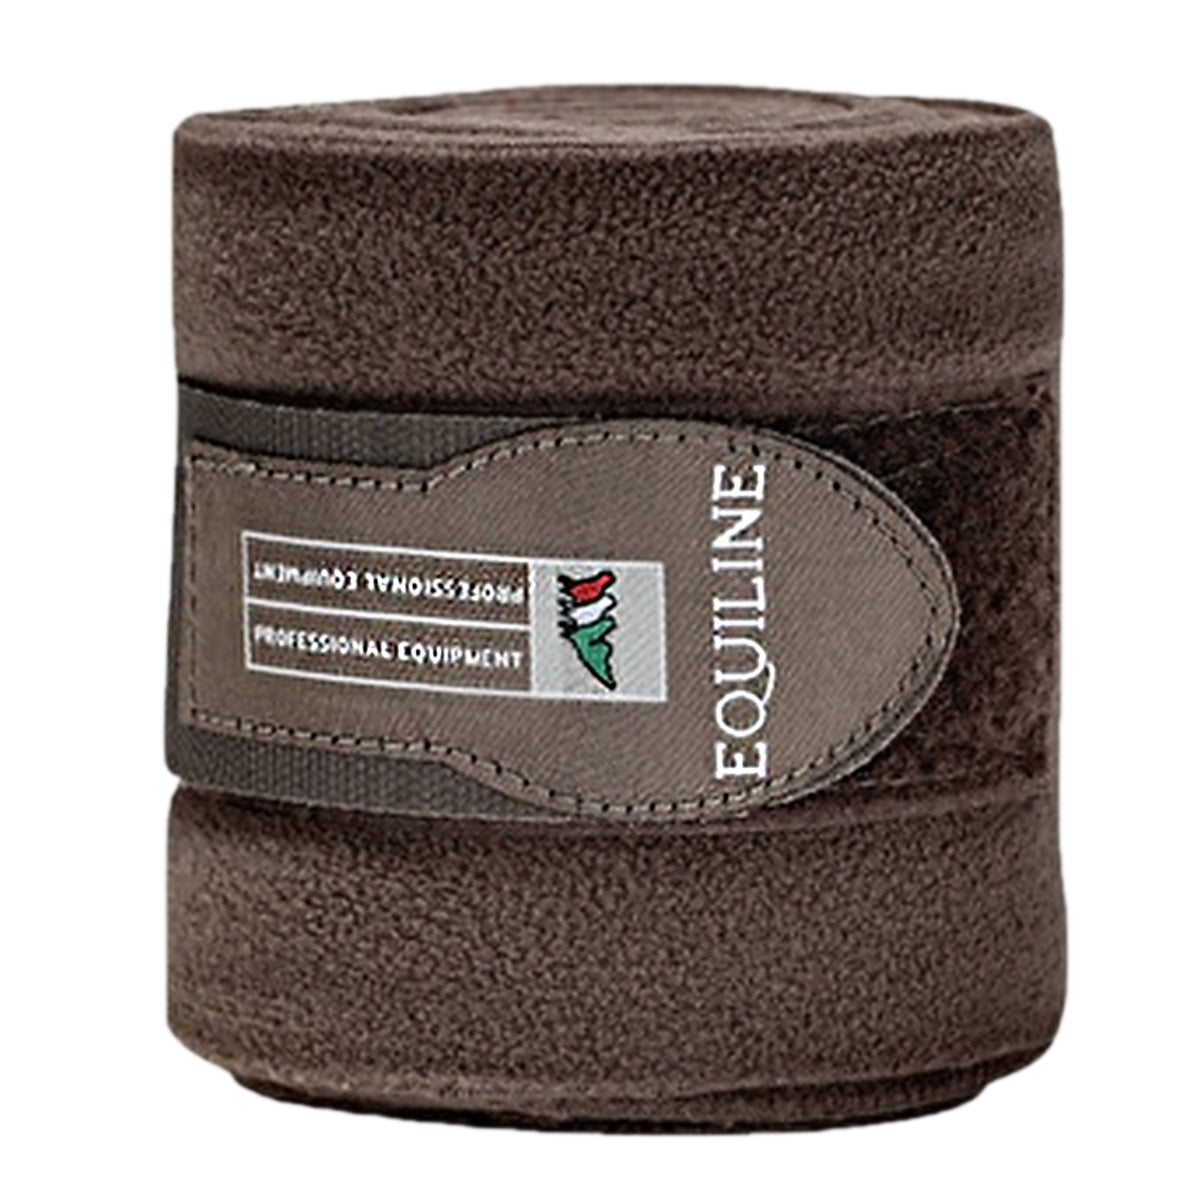 Equiline Polo Fleece Bandage Set